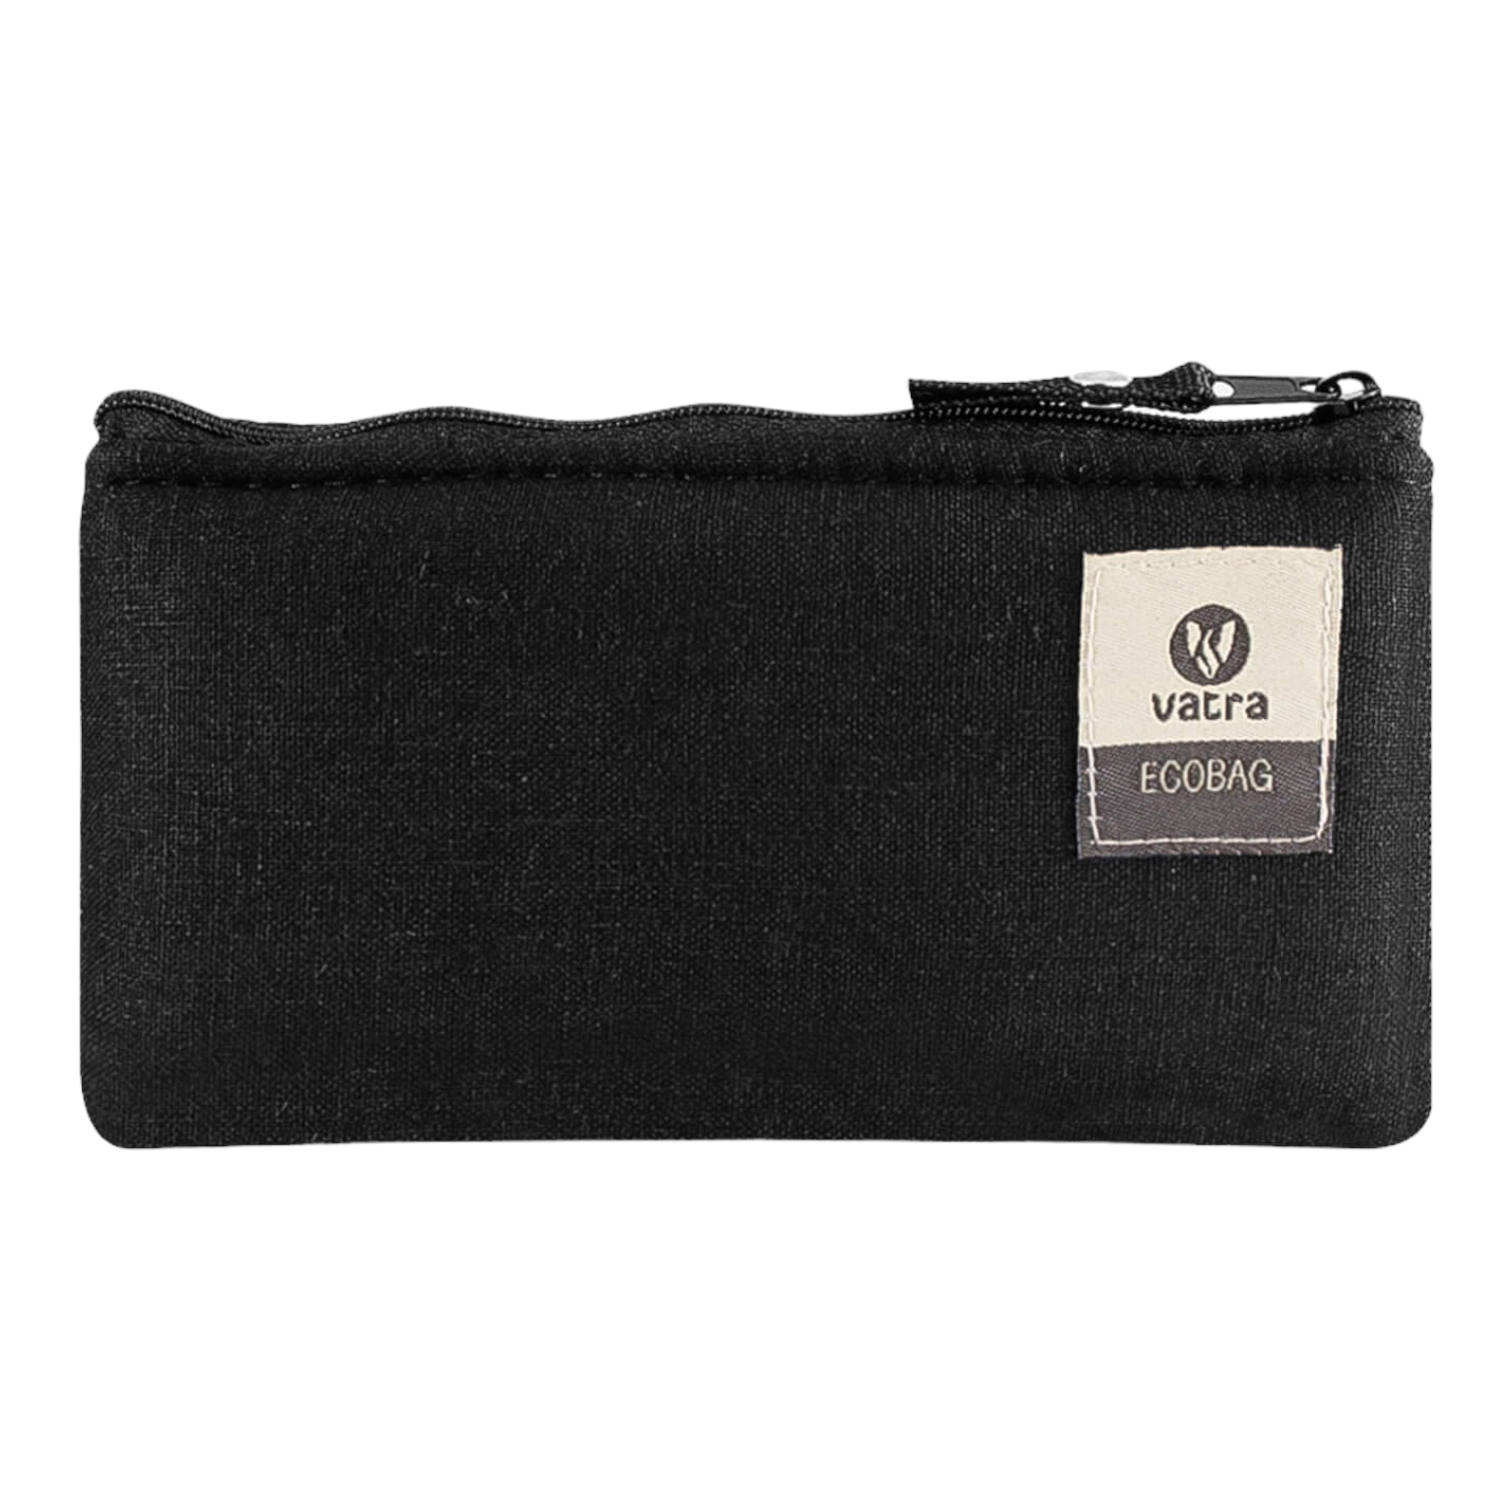 Vatra - 6.5" Zipper Bag